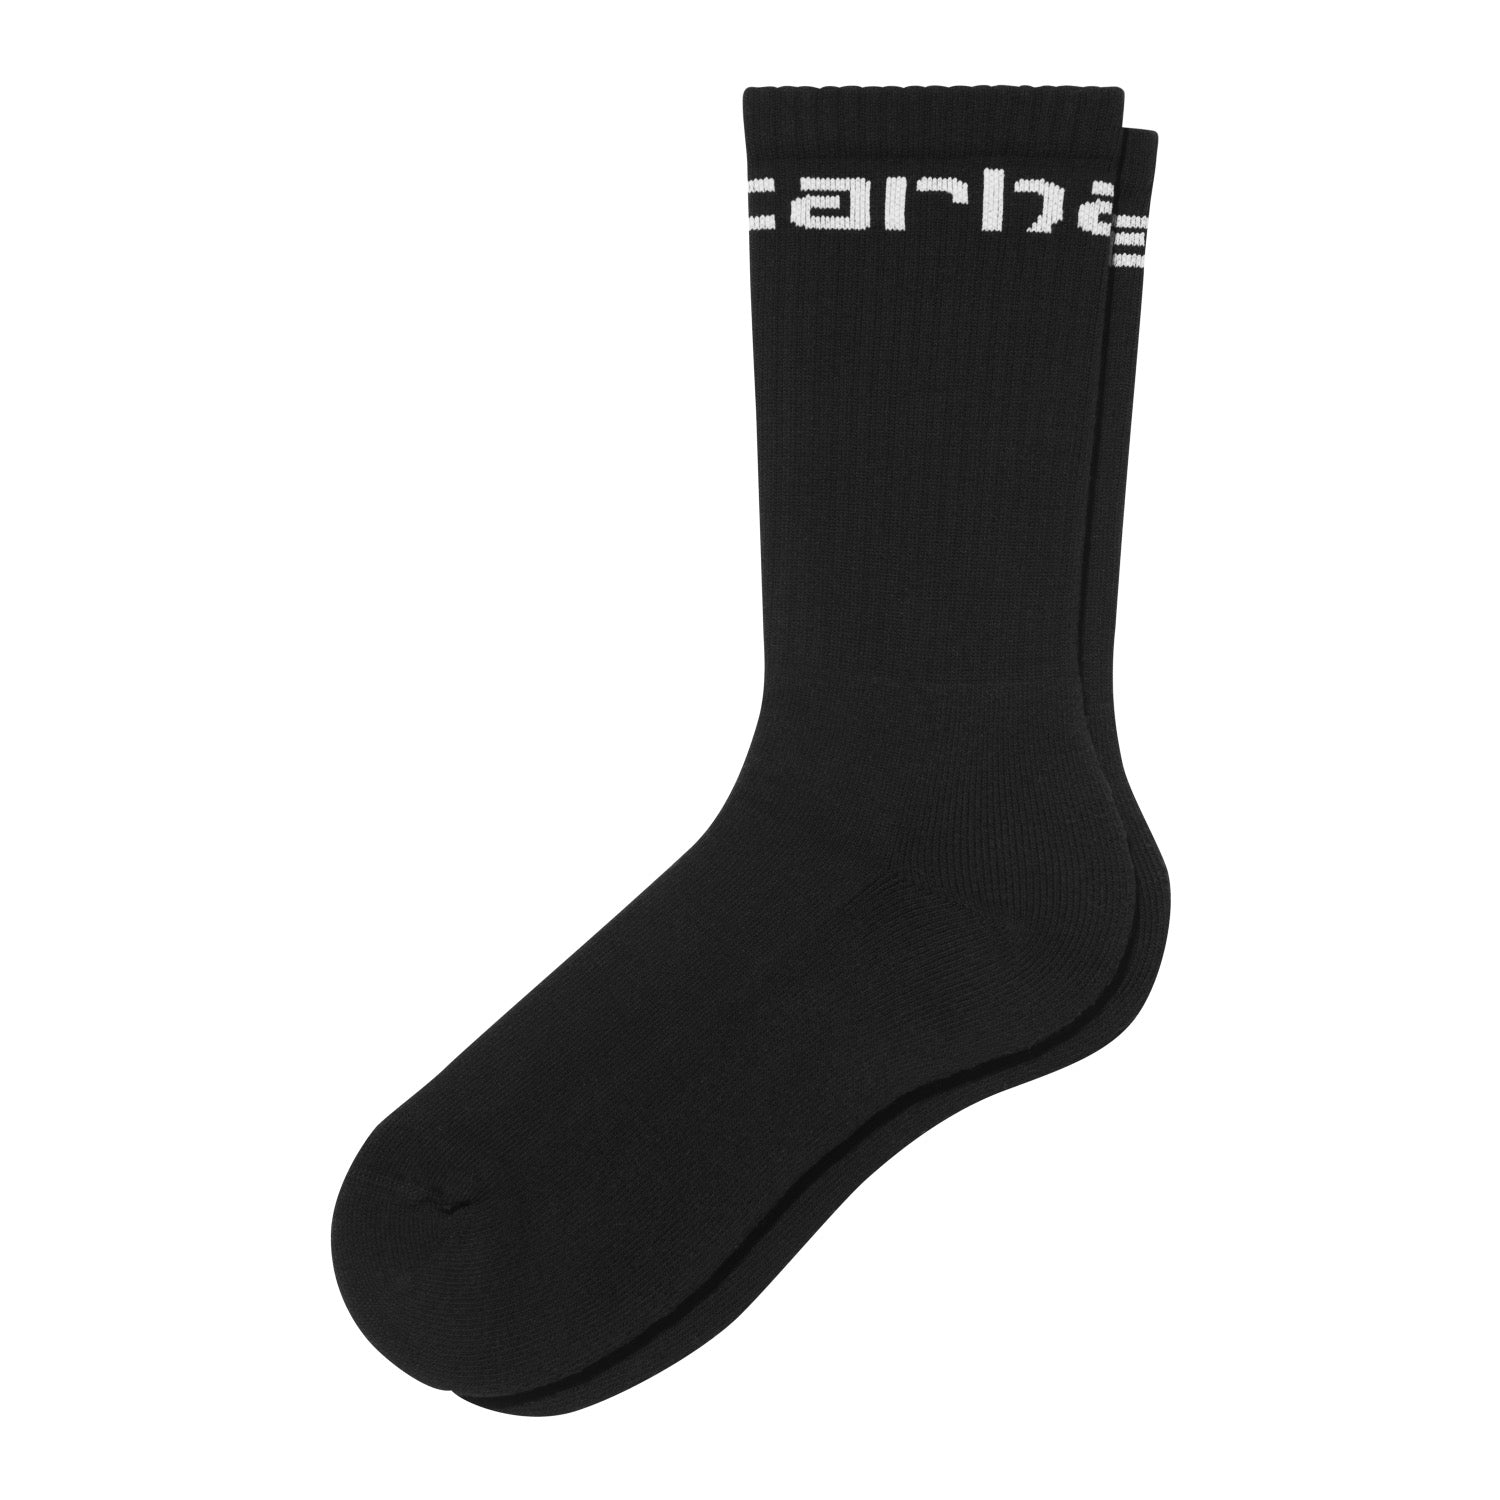 CARHARTT SOCKS - Black / White